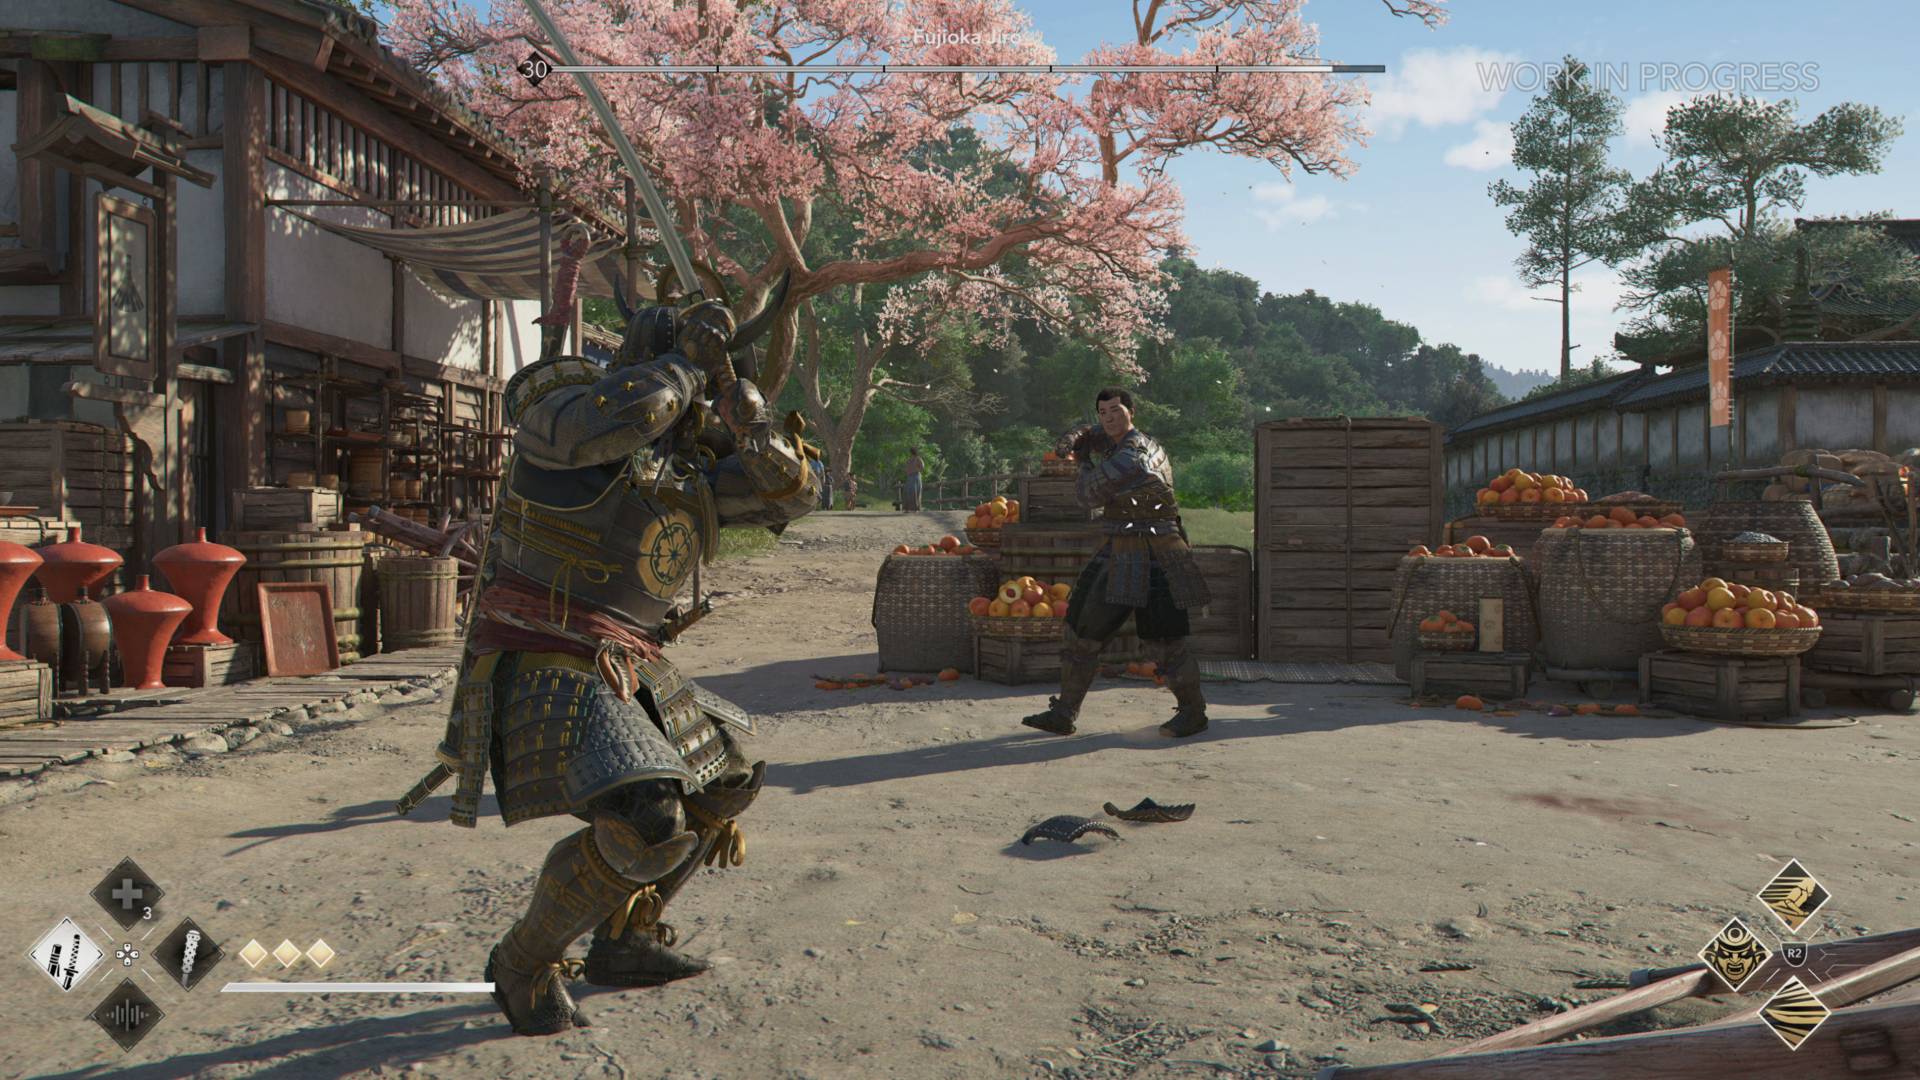 Büyük bir samuray savaşçısı, arkasında kiraz çiçekleri olan kirli bir alanda başka bir zırhsız adamla savaşıyor